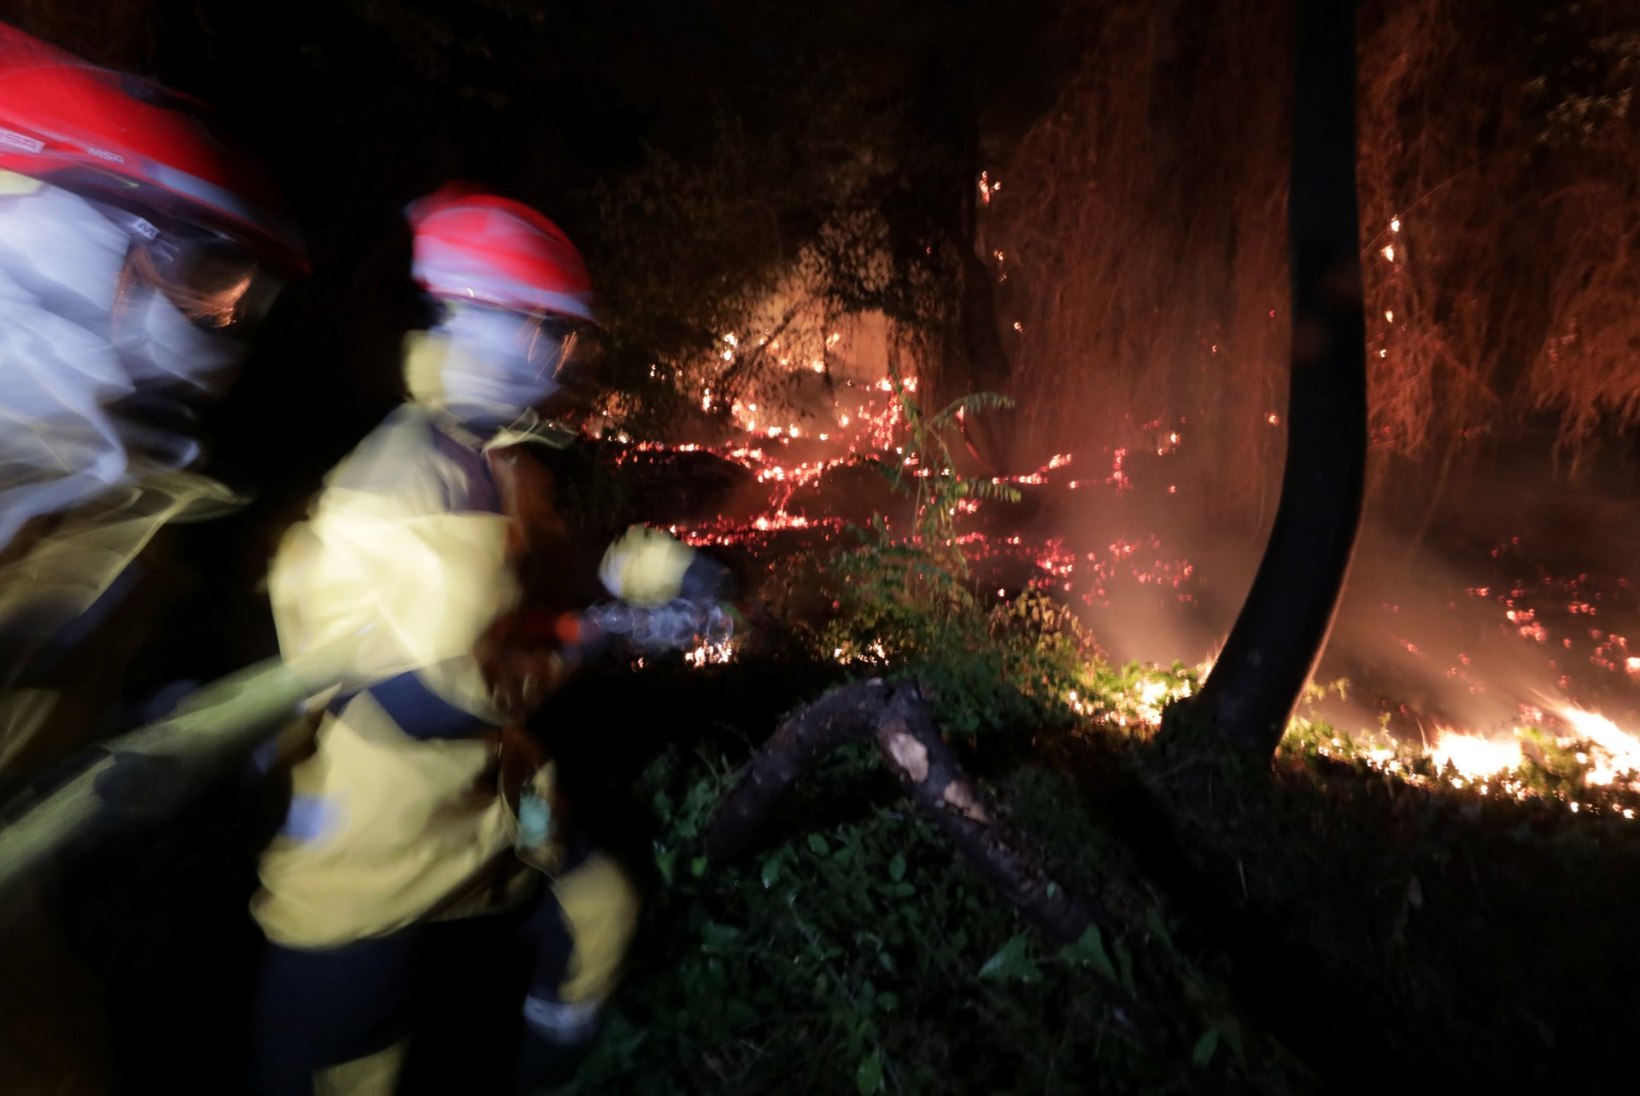 FOTOD | Prantsusmaa lõunaosa laastab ulatuslik metsapõleng